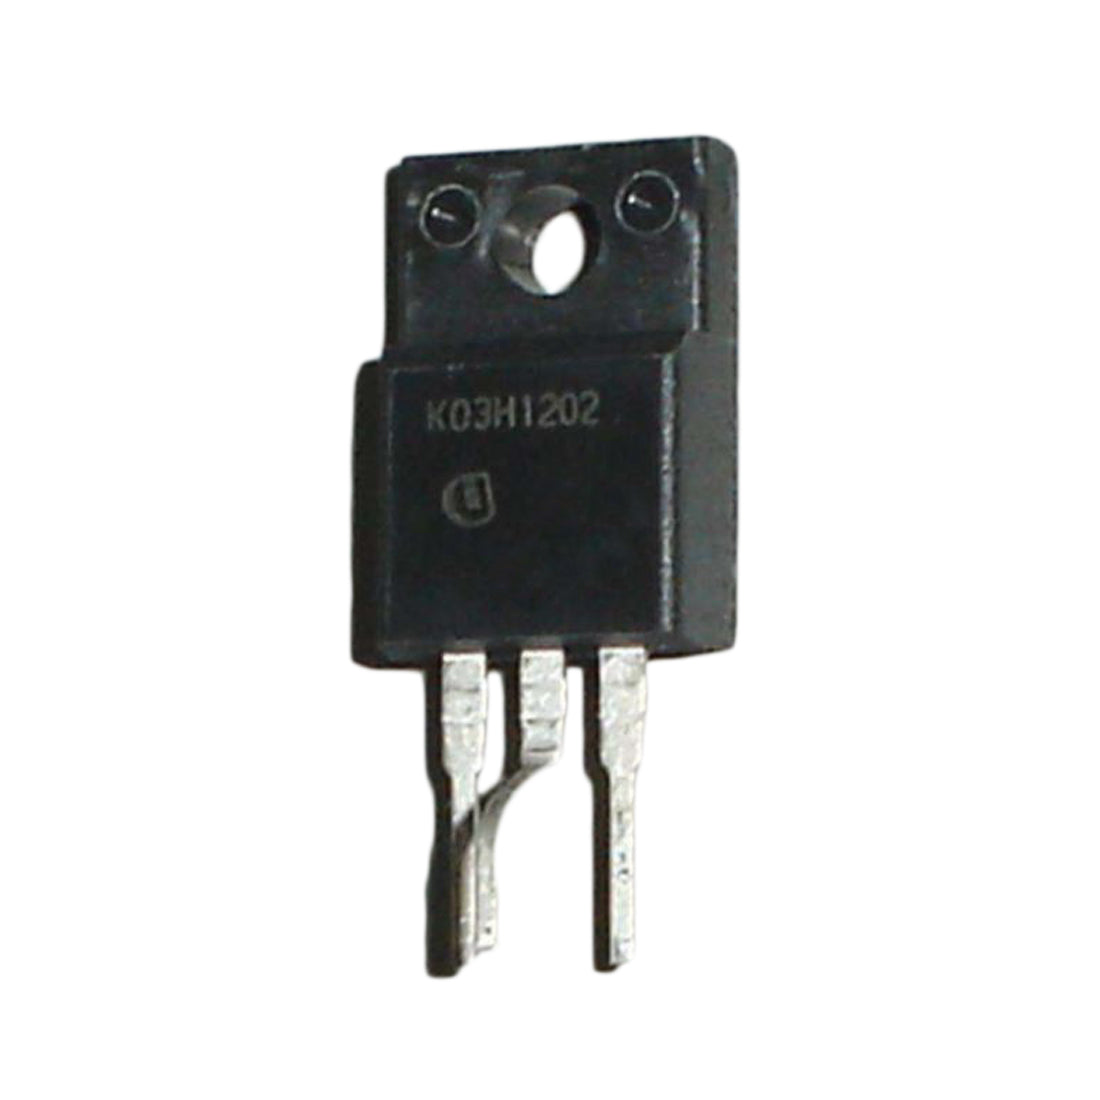 K03H1202 componente elettronico, circuito integrato, transistor, 3 contatti